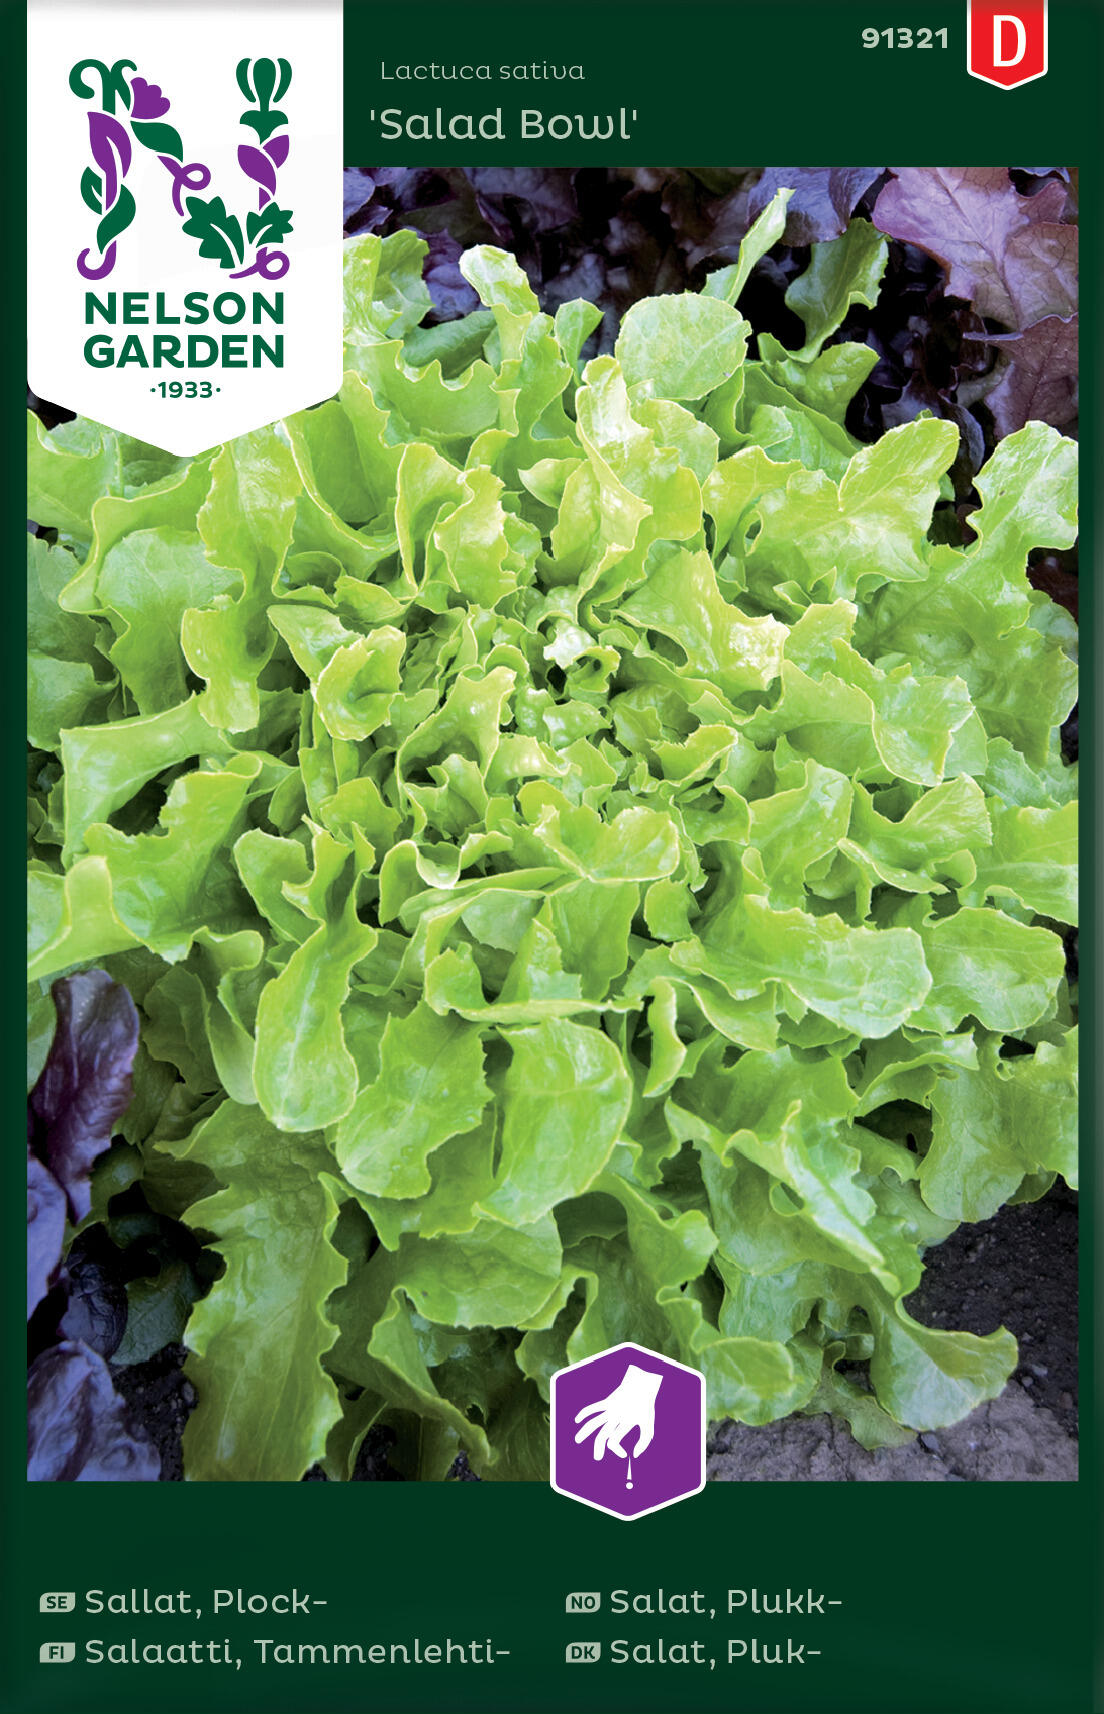 Tammenlehtisalaatti siemenet, Salad Bowl -  Nelson Garden 91321